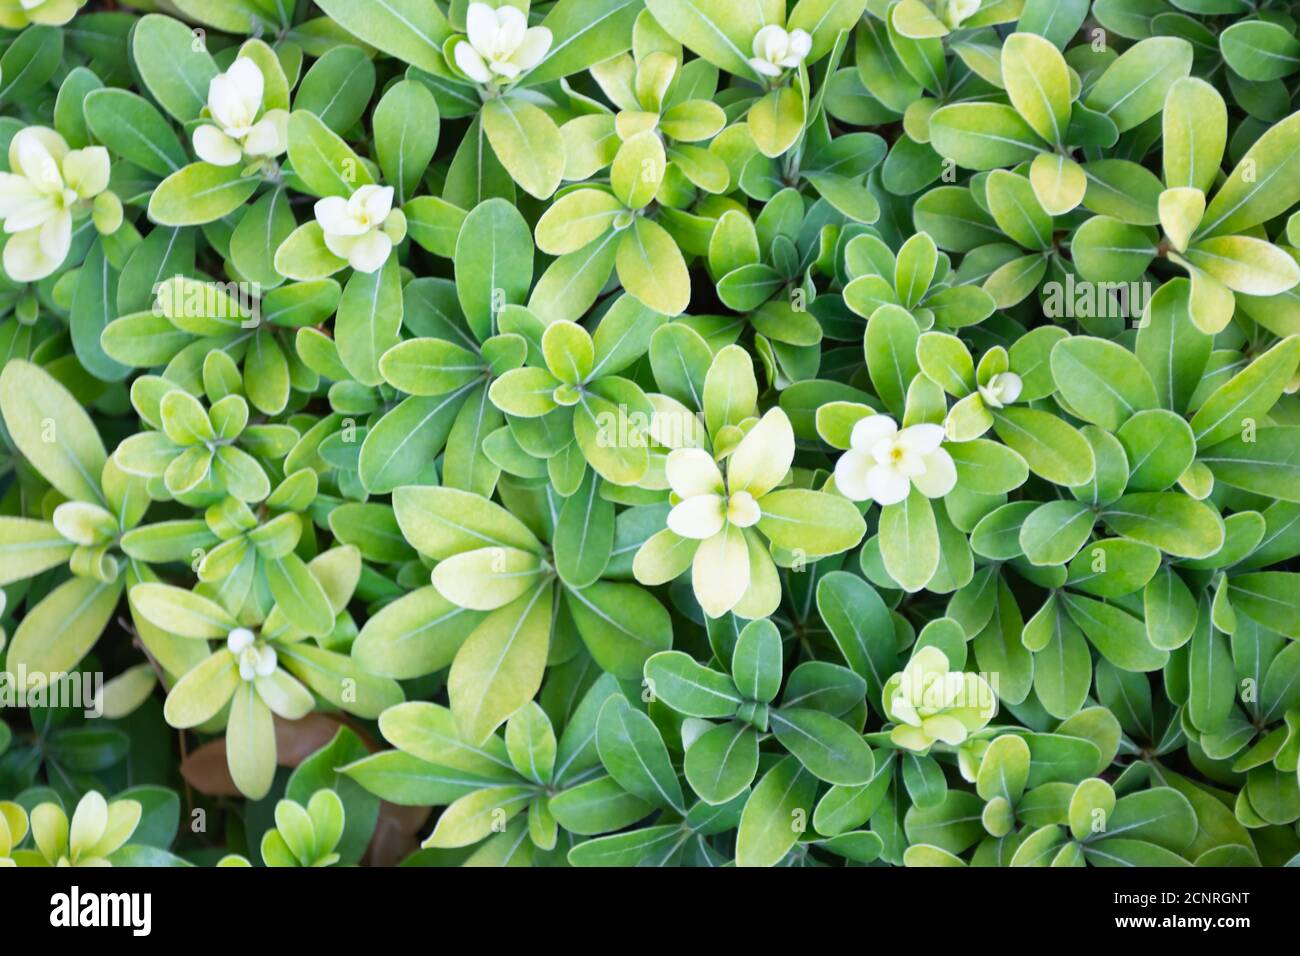 Background of green foliage of tropical plant pittosporum tobira Stock Photo